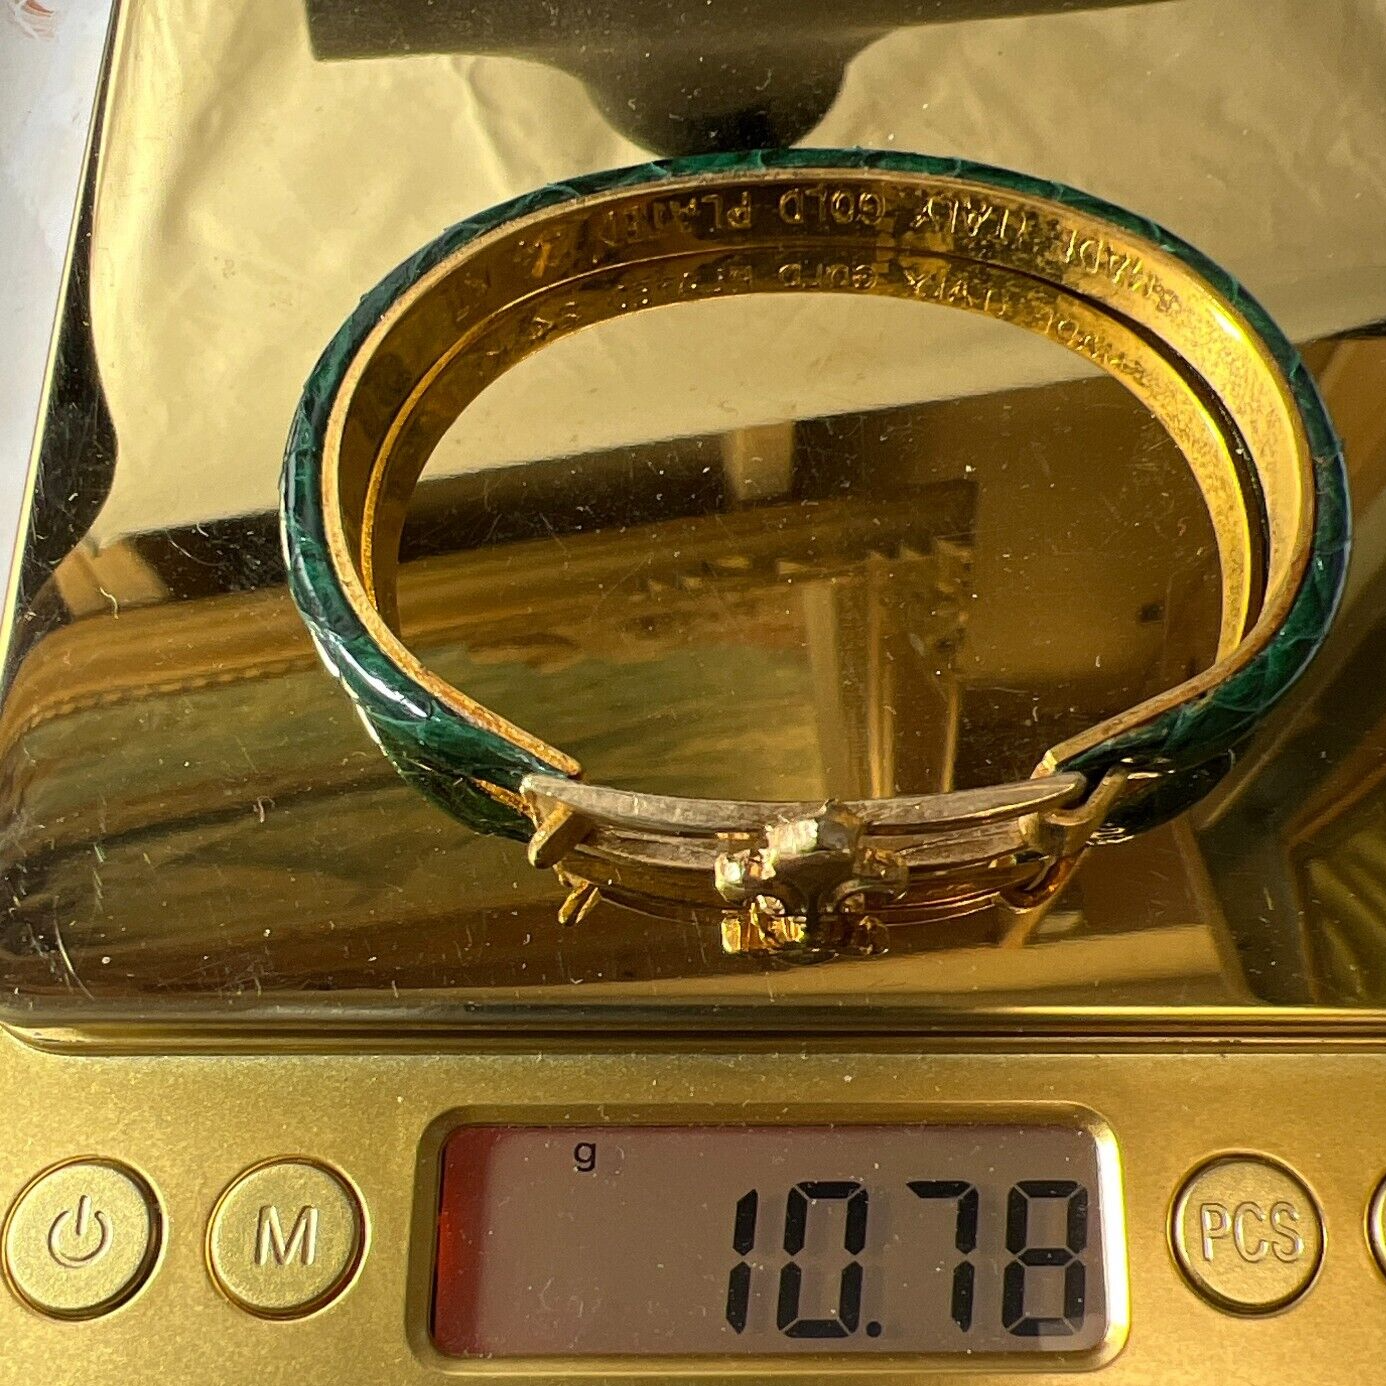 24K Gold Plated Fleur De Lis Shaped Green Leather Hinged Bangle Bracelet 10.78g